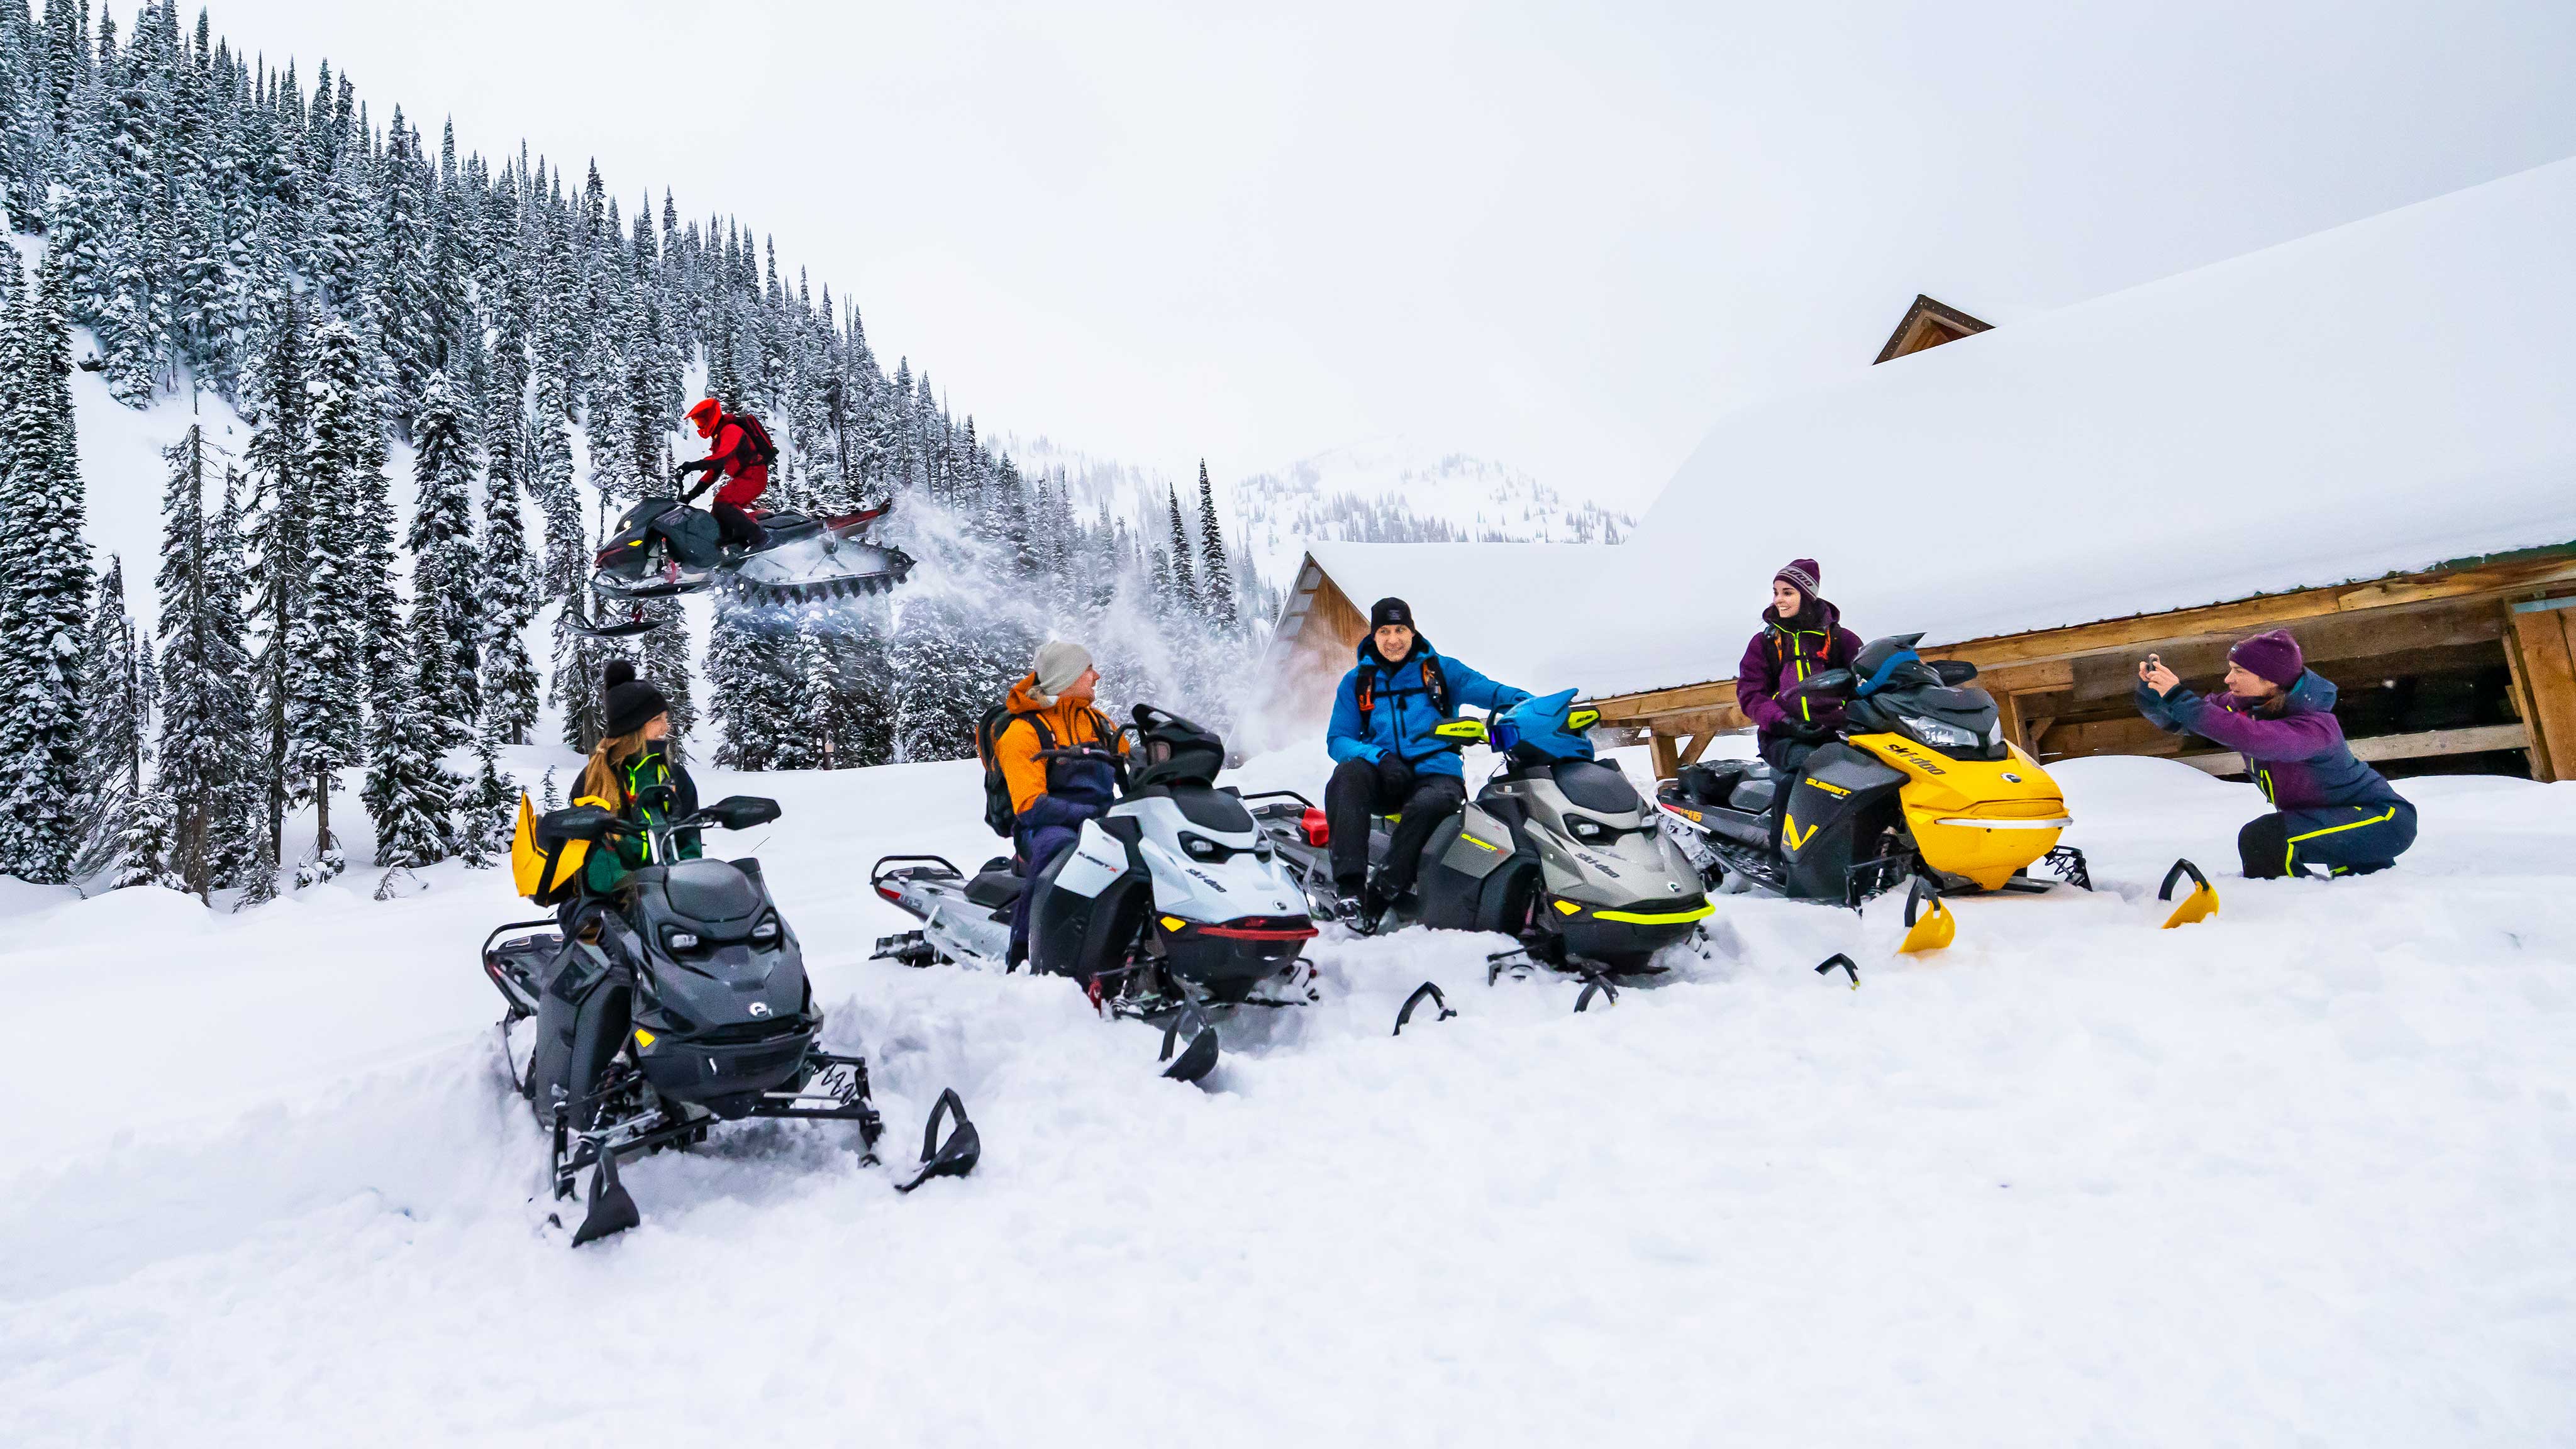 Bir grup arkadaş, Ski-Doo kar motosikletleriyle karda bir günün tadını çıkarıyor.